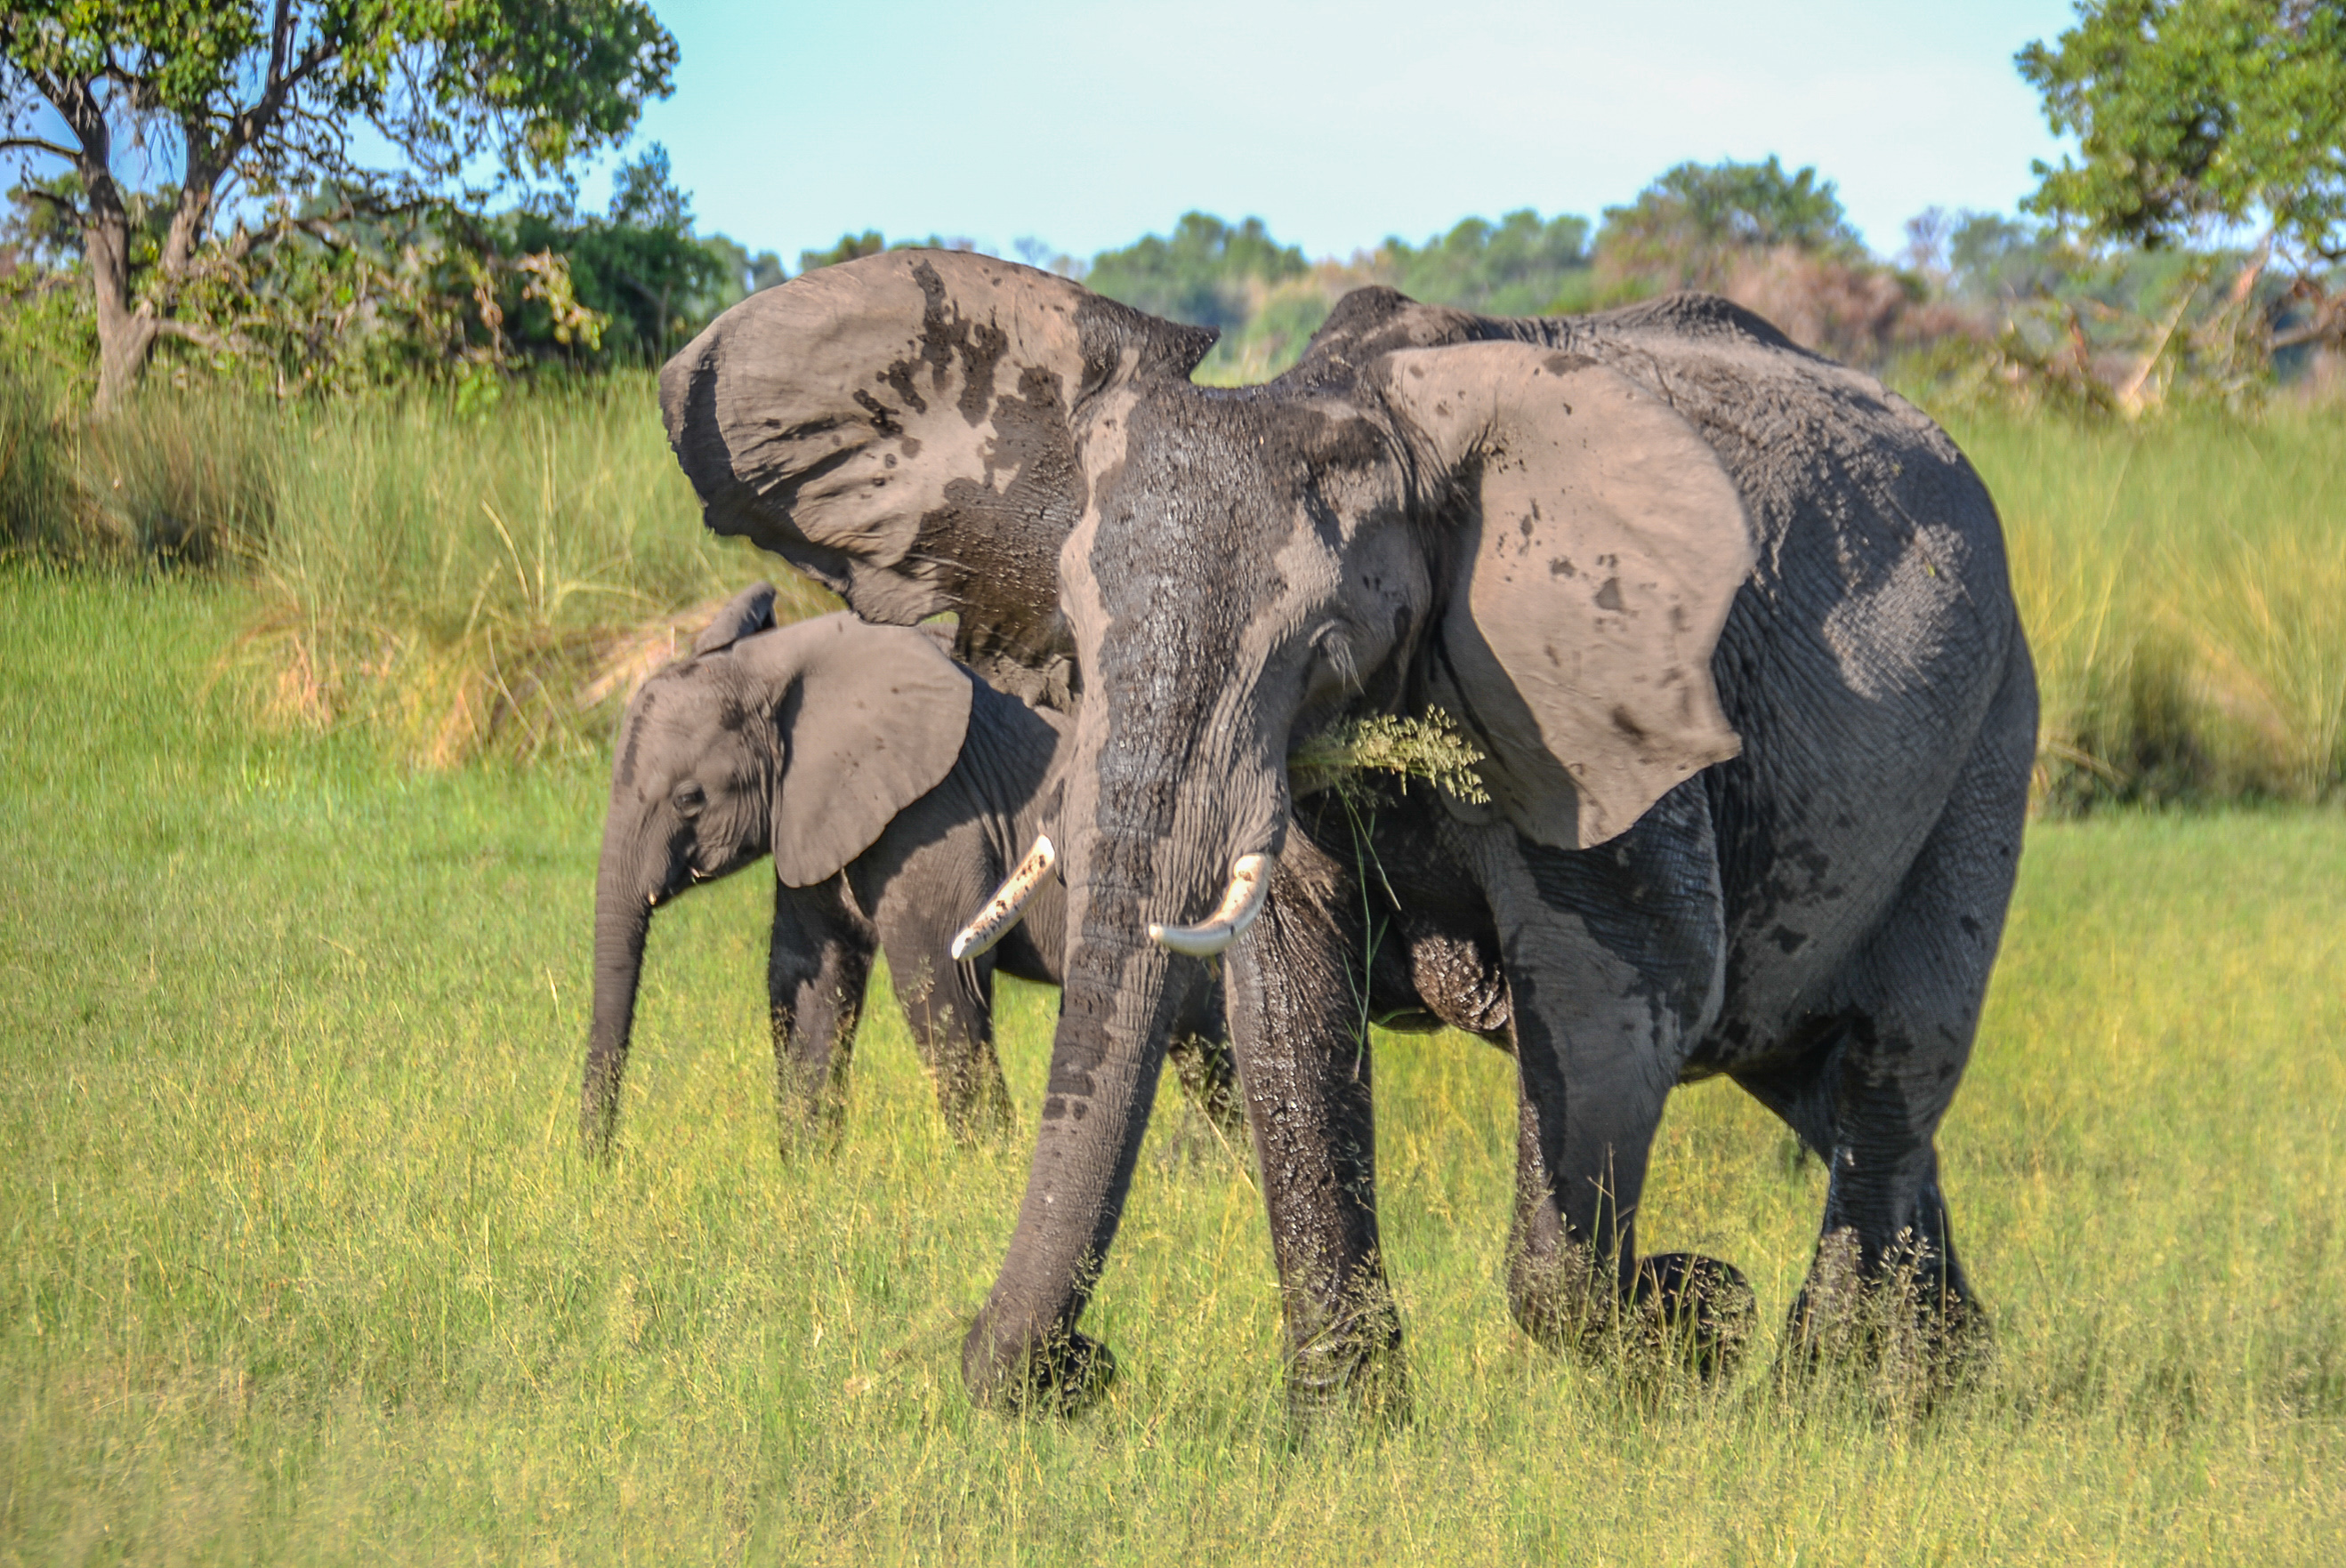 Eléphants des savanes africains (African bush Elephant, Loxodonta africana), "mock-charge" d'une femelle cherchant à protéger son rejeton en nous impressionnant. Shinde, Delta de l'Okavango , Botswana.